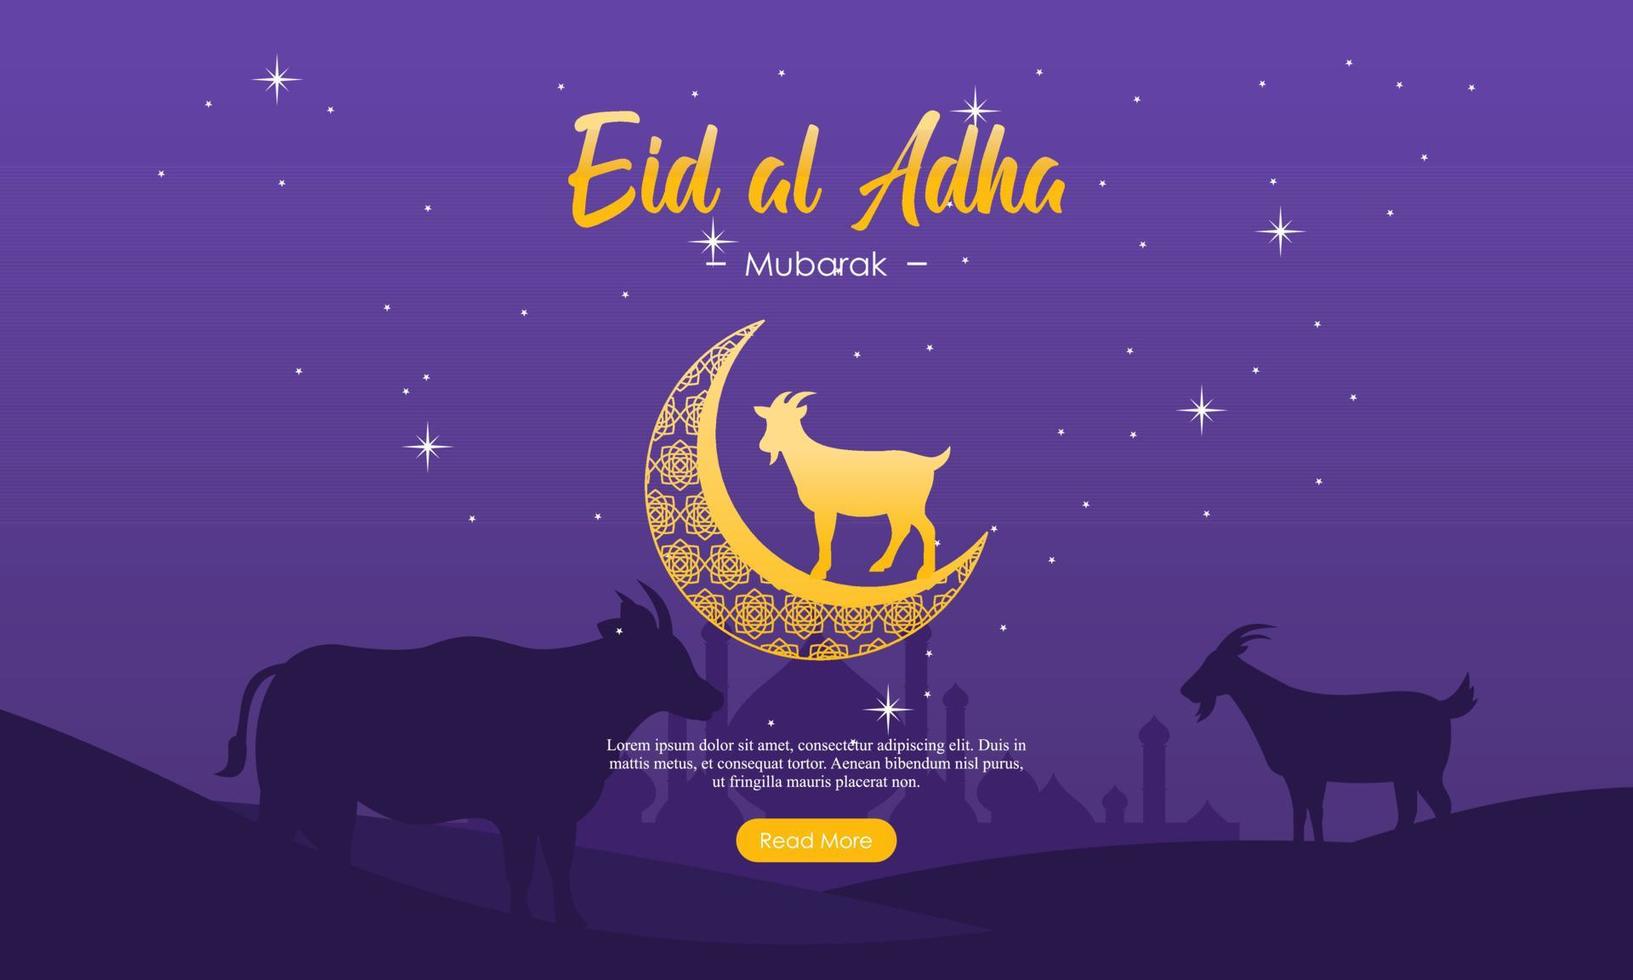 plantilla de banner de redes sociales del festival islámico eid al adha mubarak vector